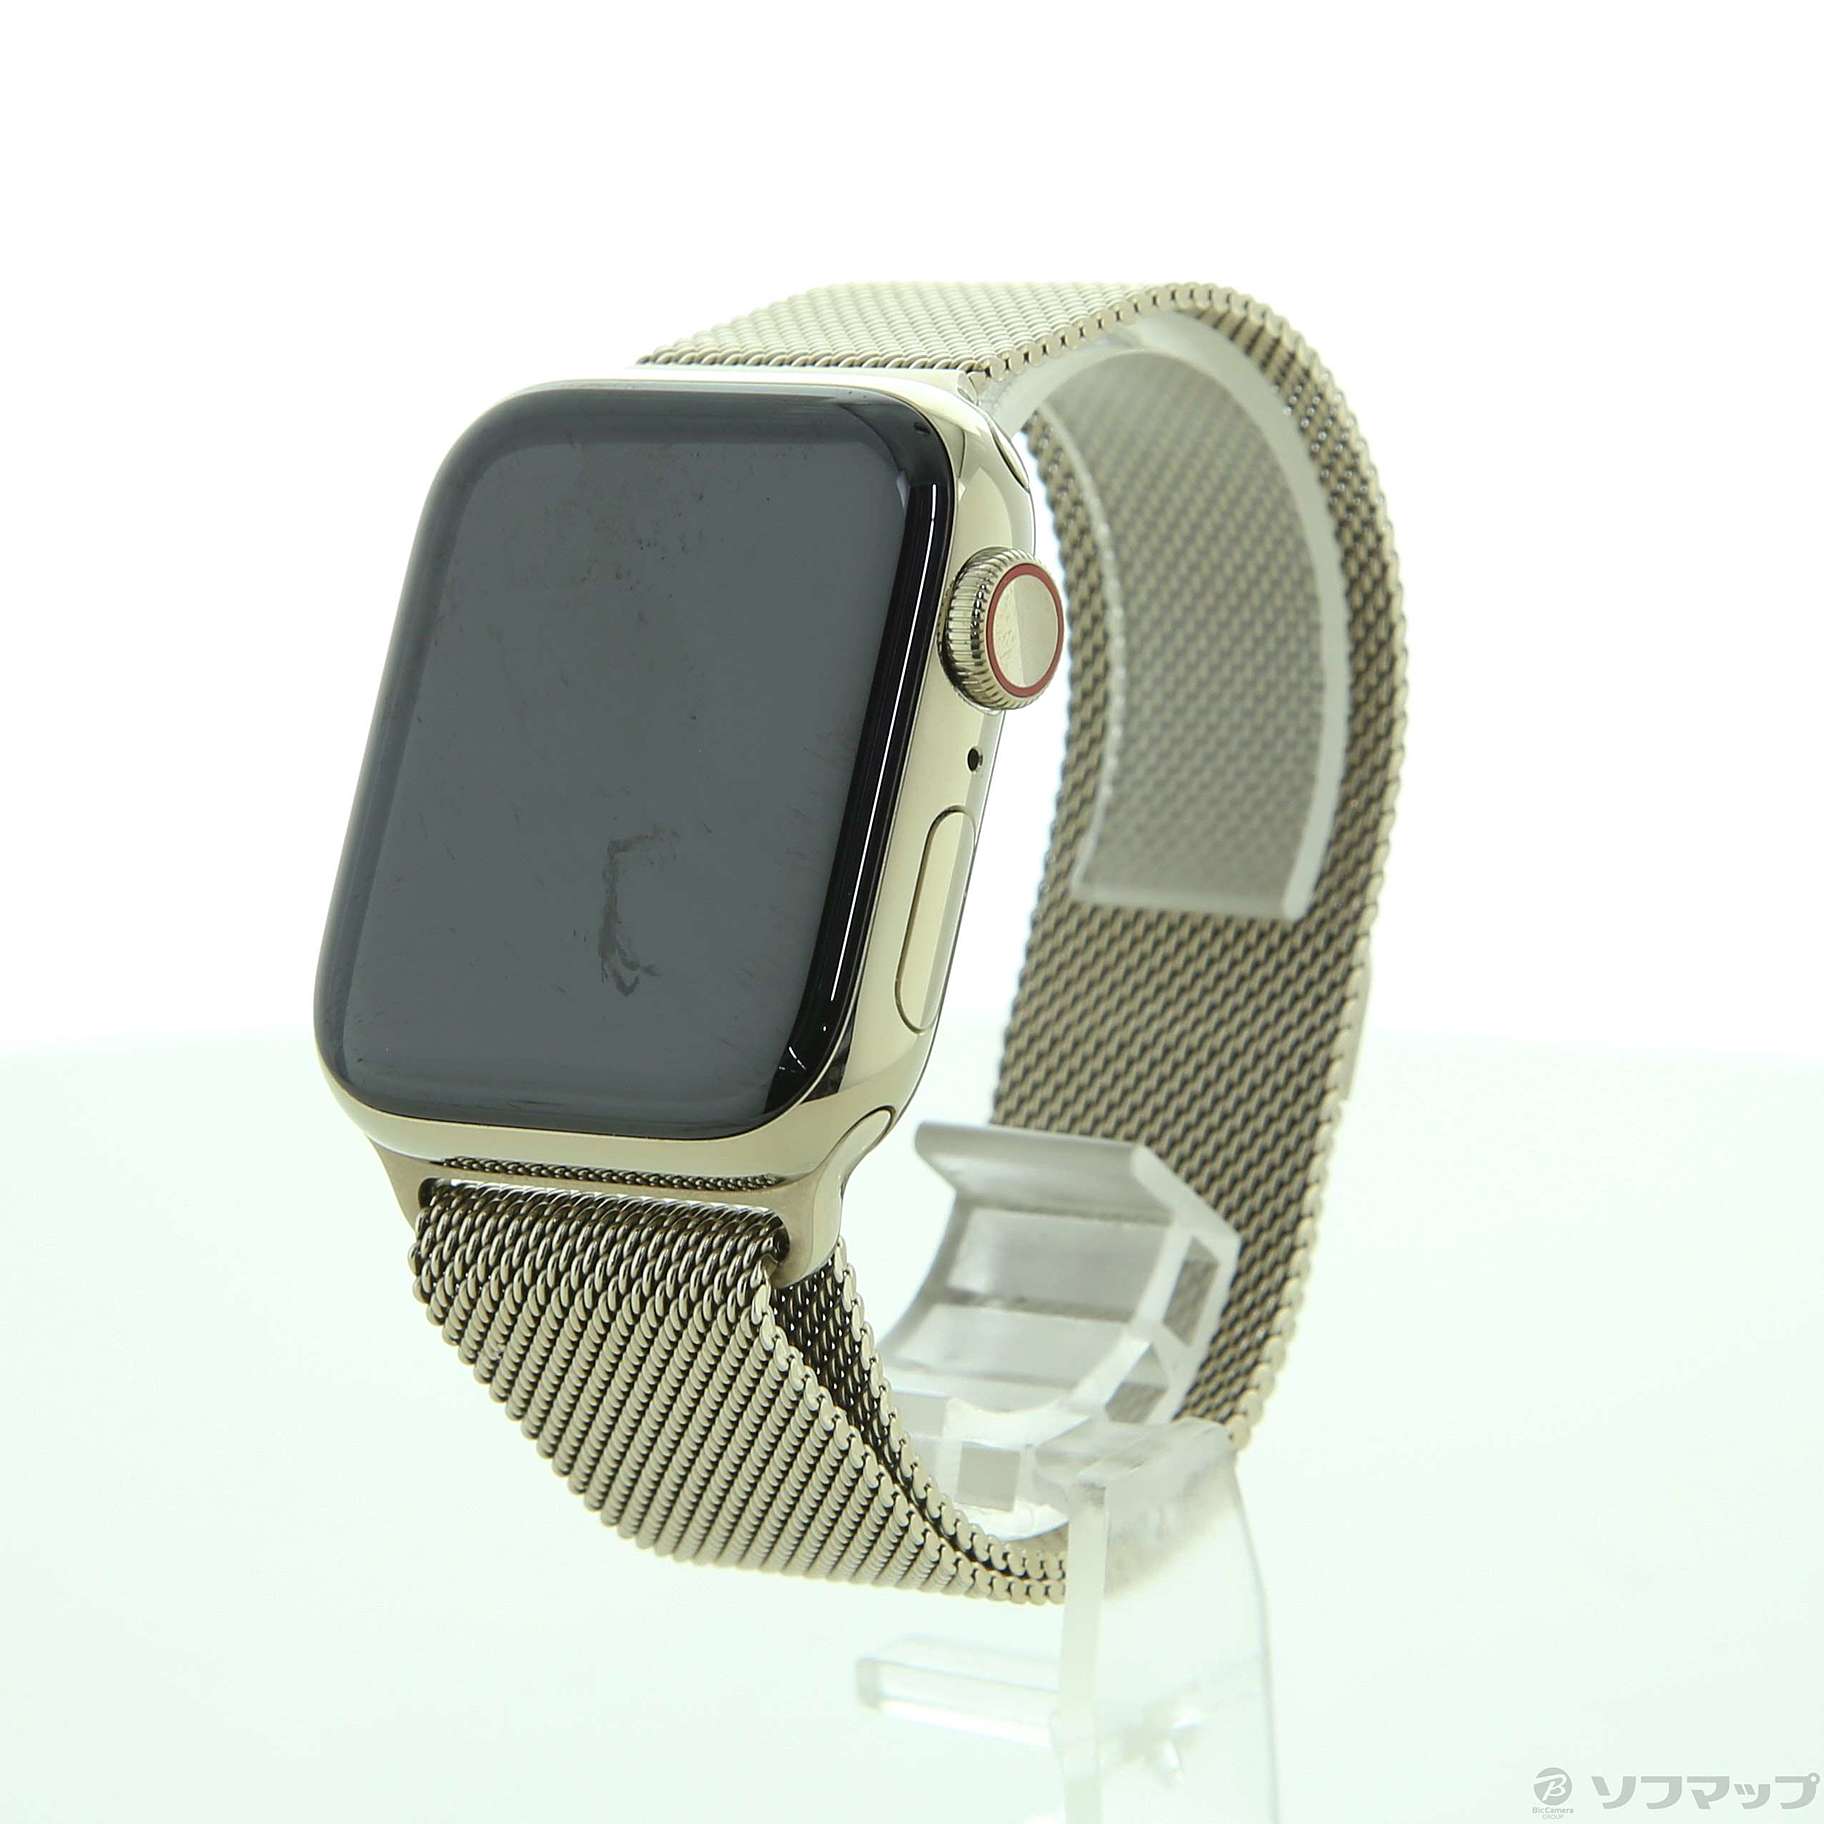 〔展示品〕 Apple Watch Series 6 GPS + Cellular 40mm ゴールドステンレススチールケース ゴールドミラネーゼループ